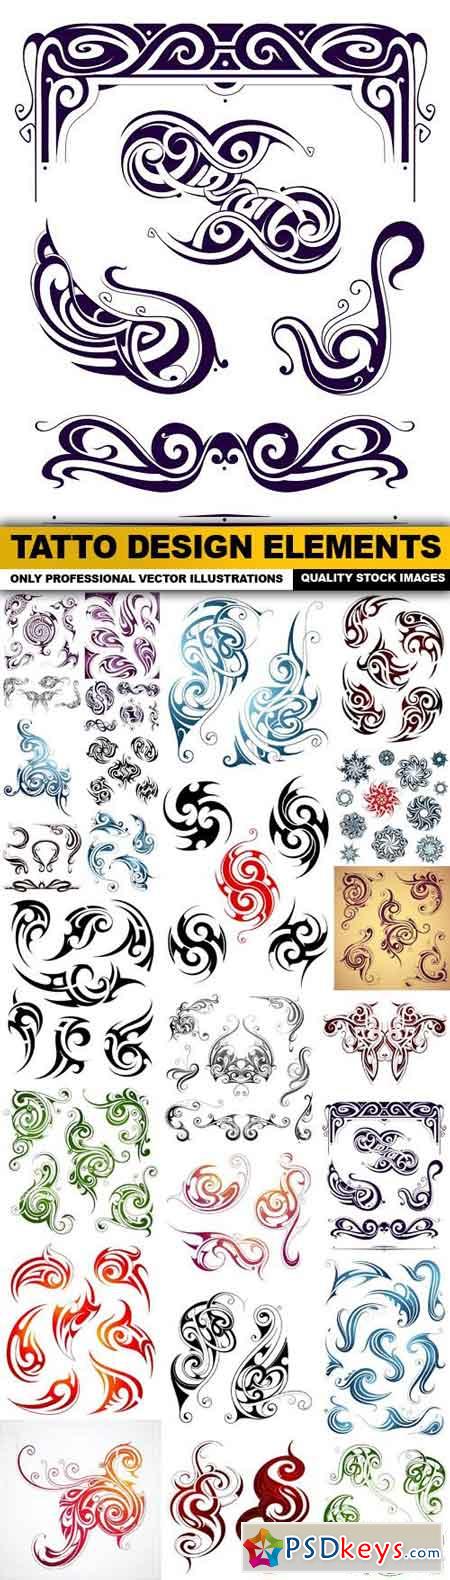 Tatto Design Elements - 25 Vector